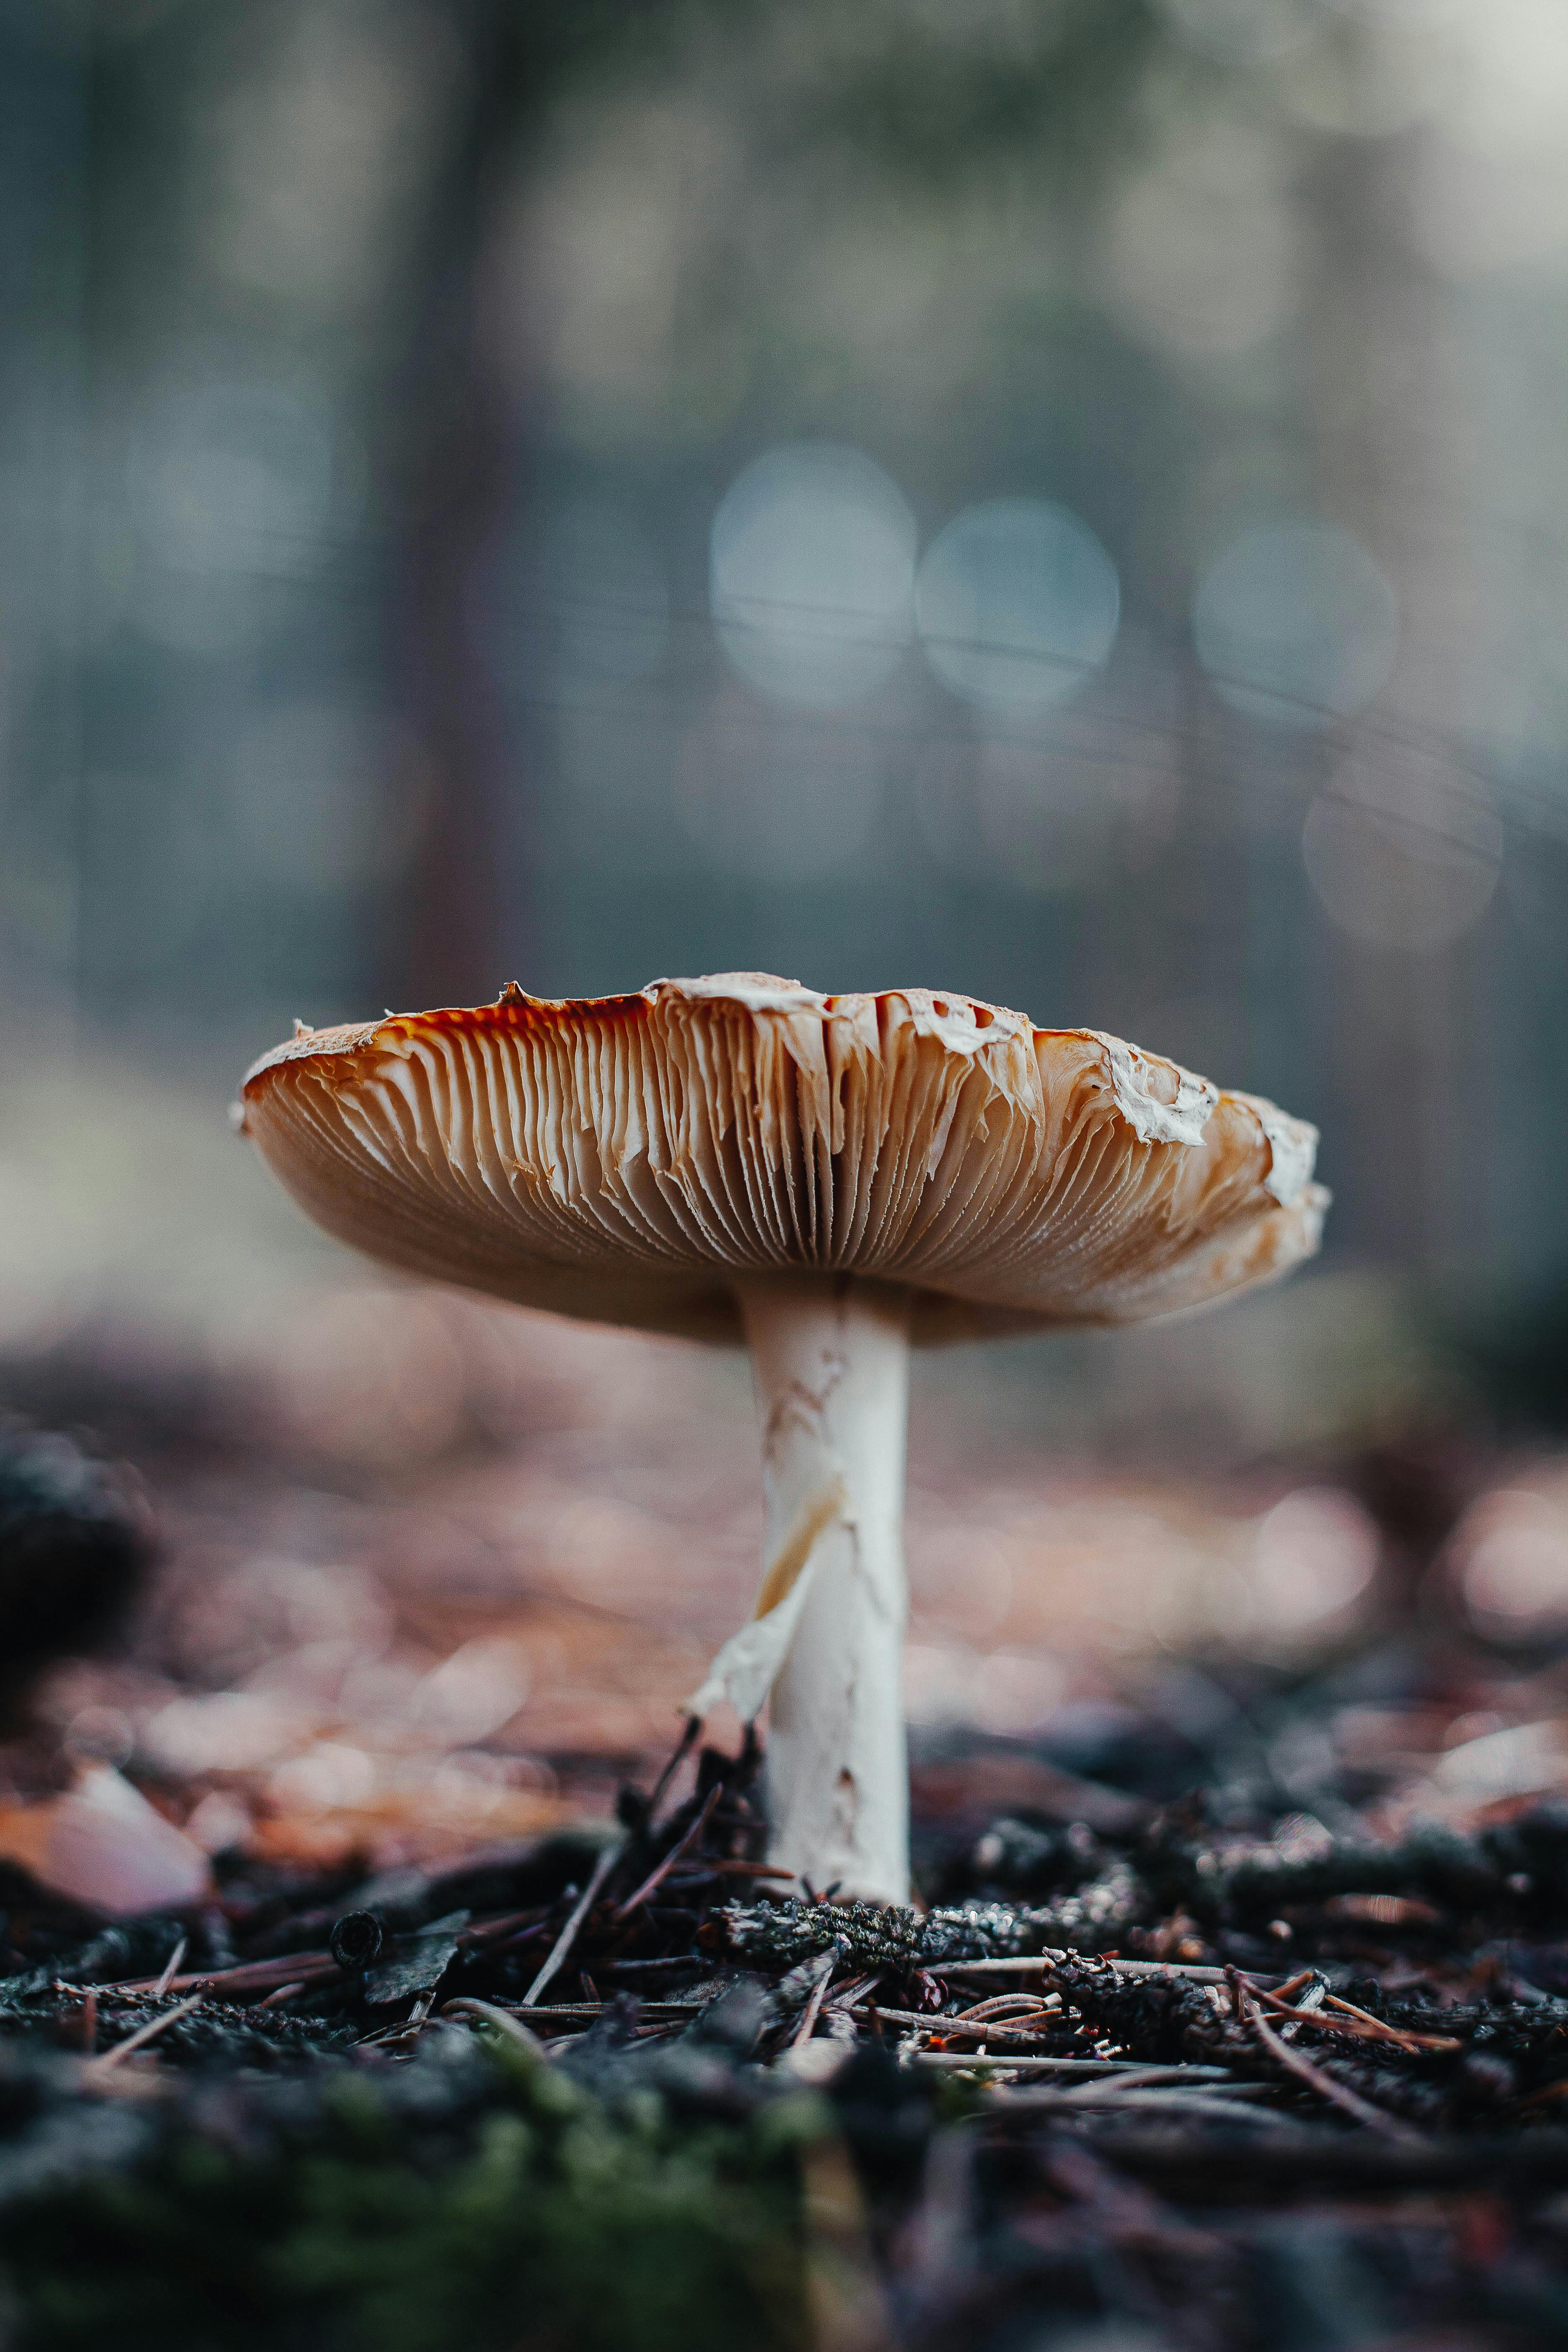 a mushroom on the ground